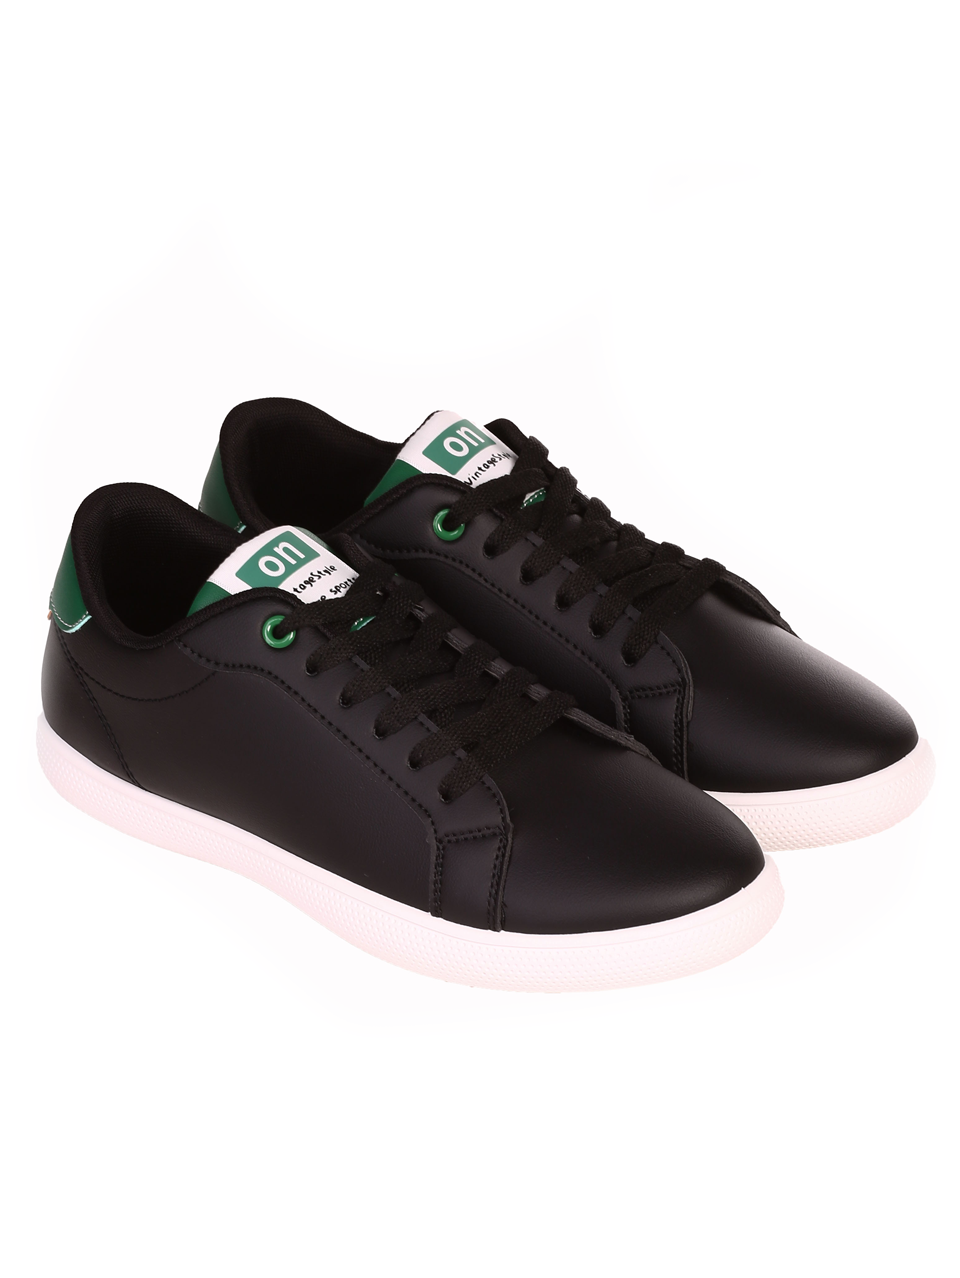 Eжедневни мъжки комфортни обувки в черен/зелен цвят 7U-24119 black/green